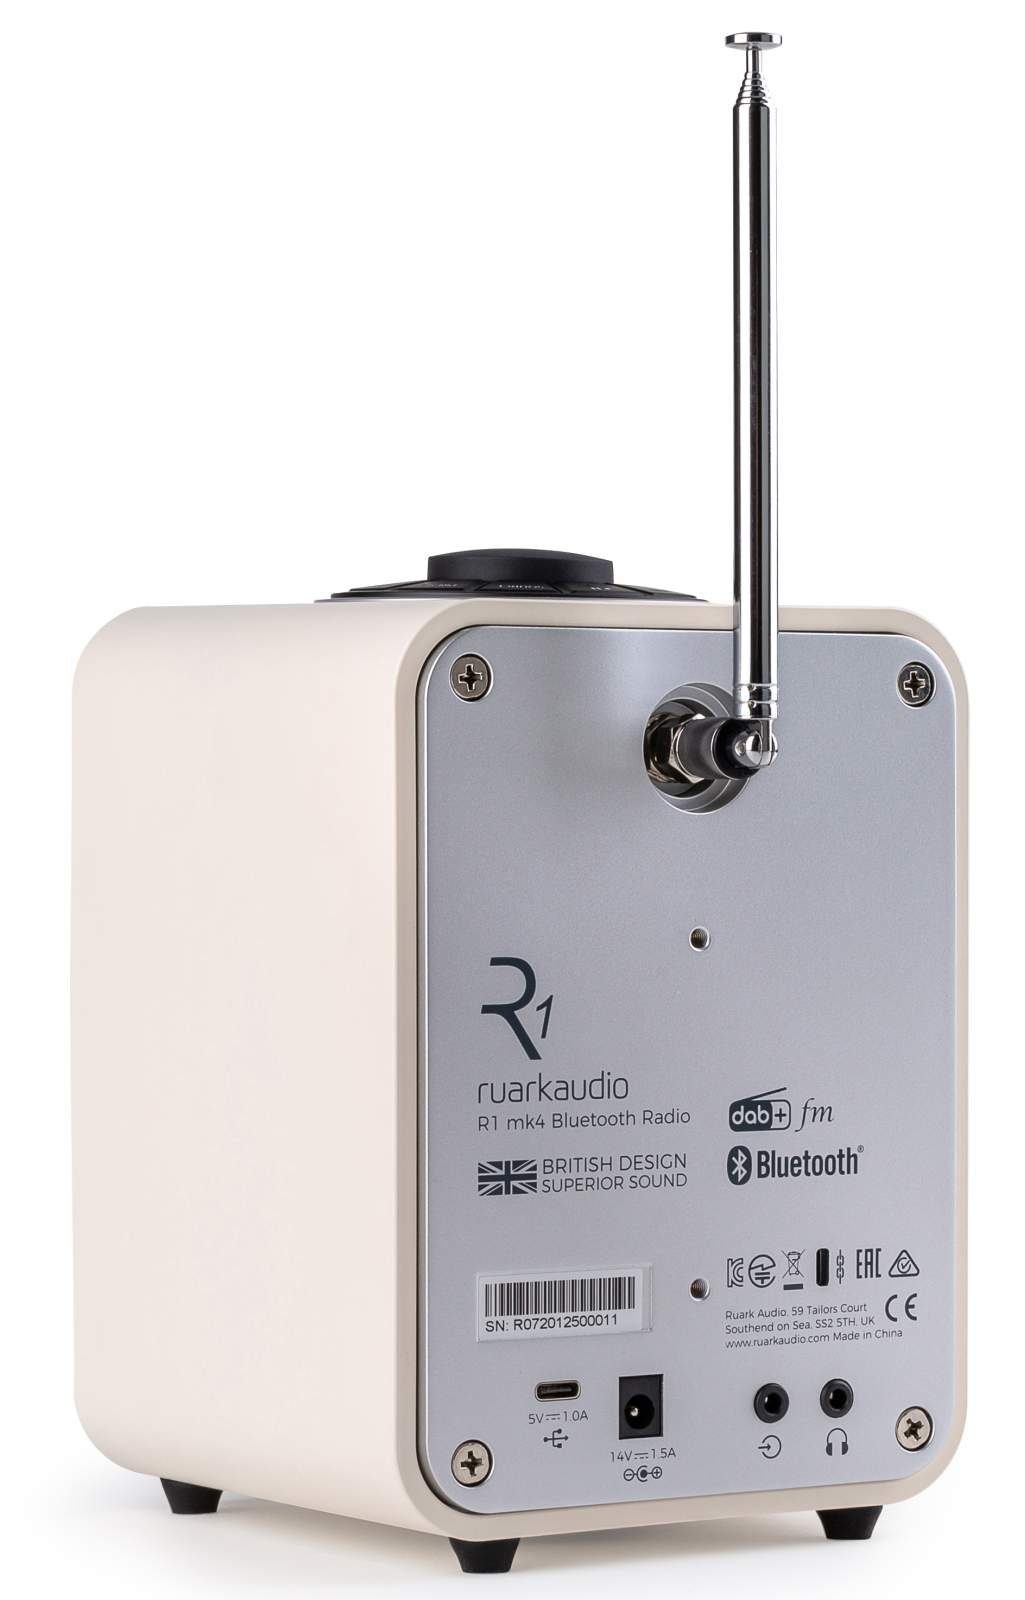 ruarkaudio ruark audio R1 MK4 einstellbare FM-Tuner, Digitalradio Light Bässe) Bluetooth-Empfänger, Cream und Digitalradio und mit (Digitalradio Cream Höhen (DAB),FM-Tuner, Uhranzeige, DAB+ (beige) (DAB) Digitalradio Wecker,Displaybeleuchtung,Display